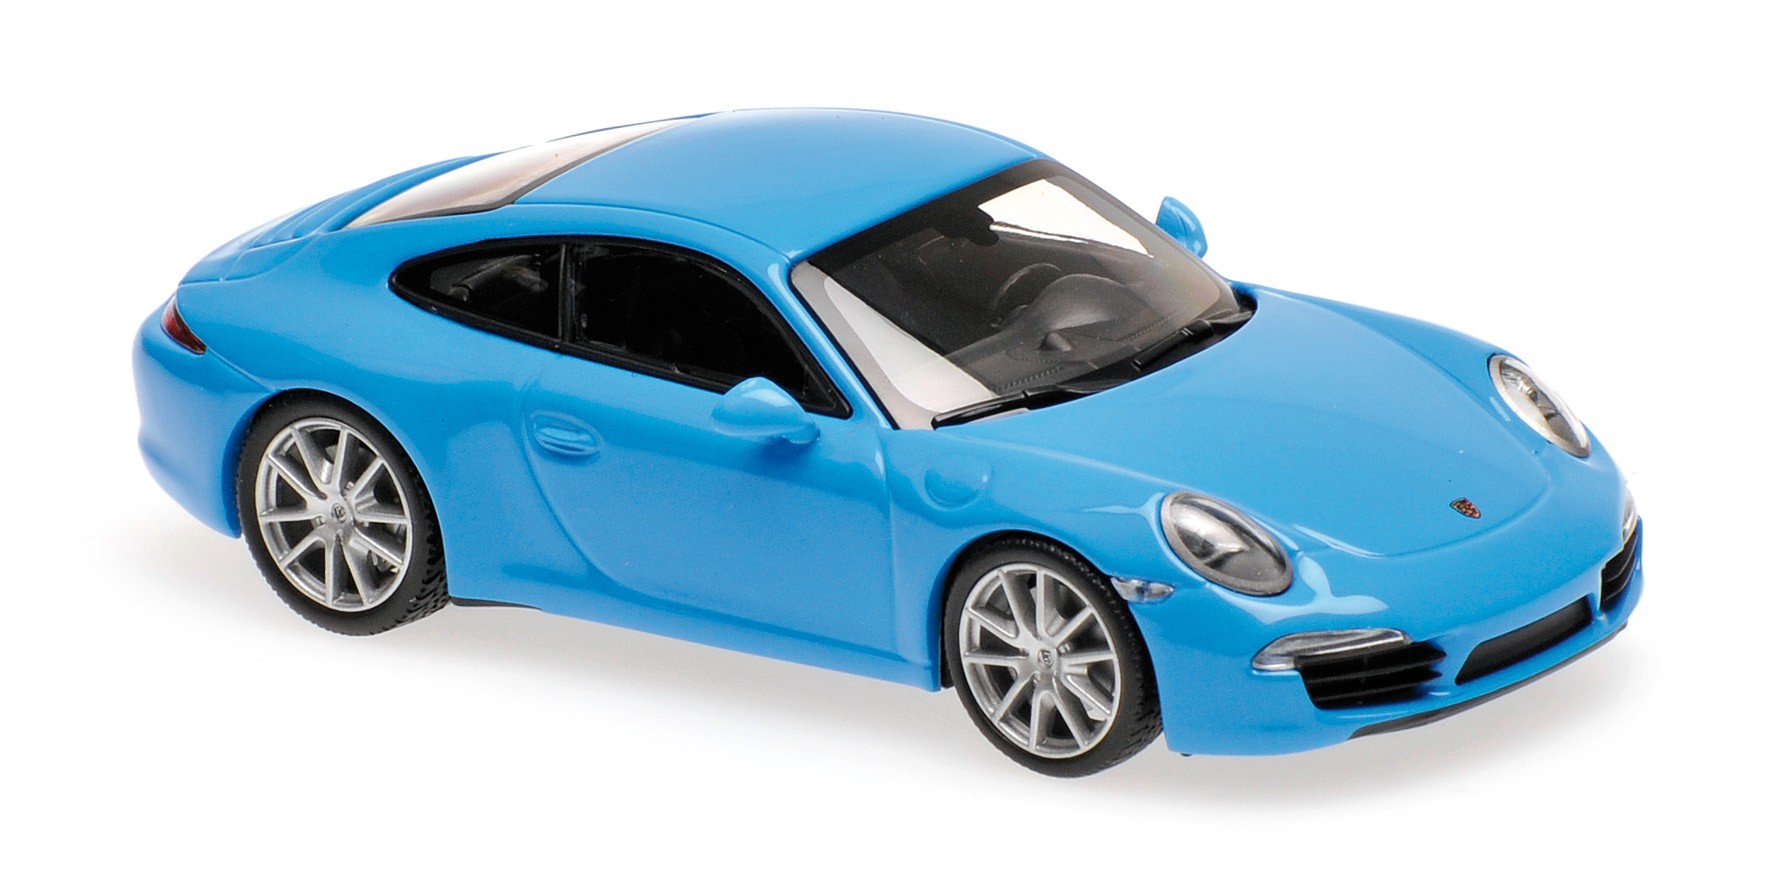 PORSCHE 911 S 2012 (bleu)